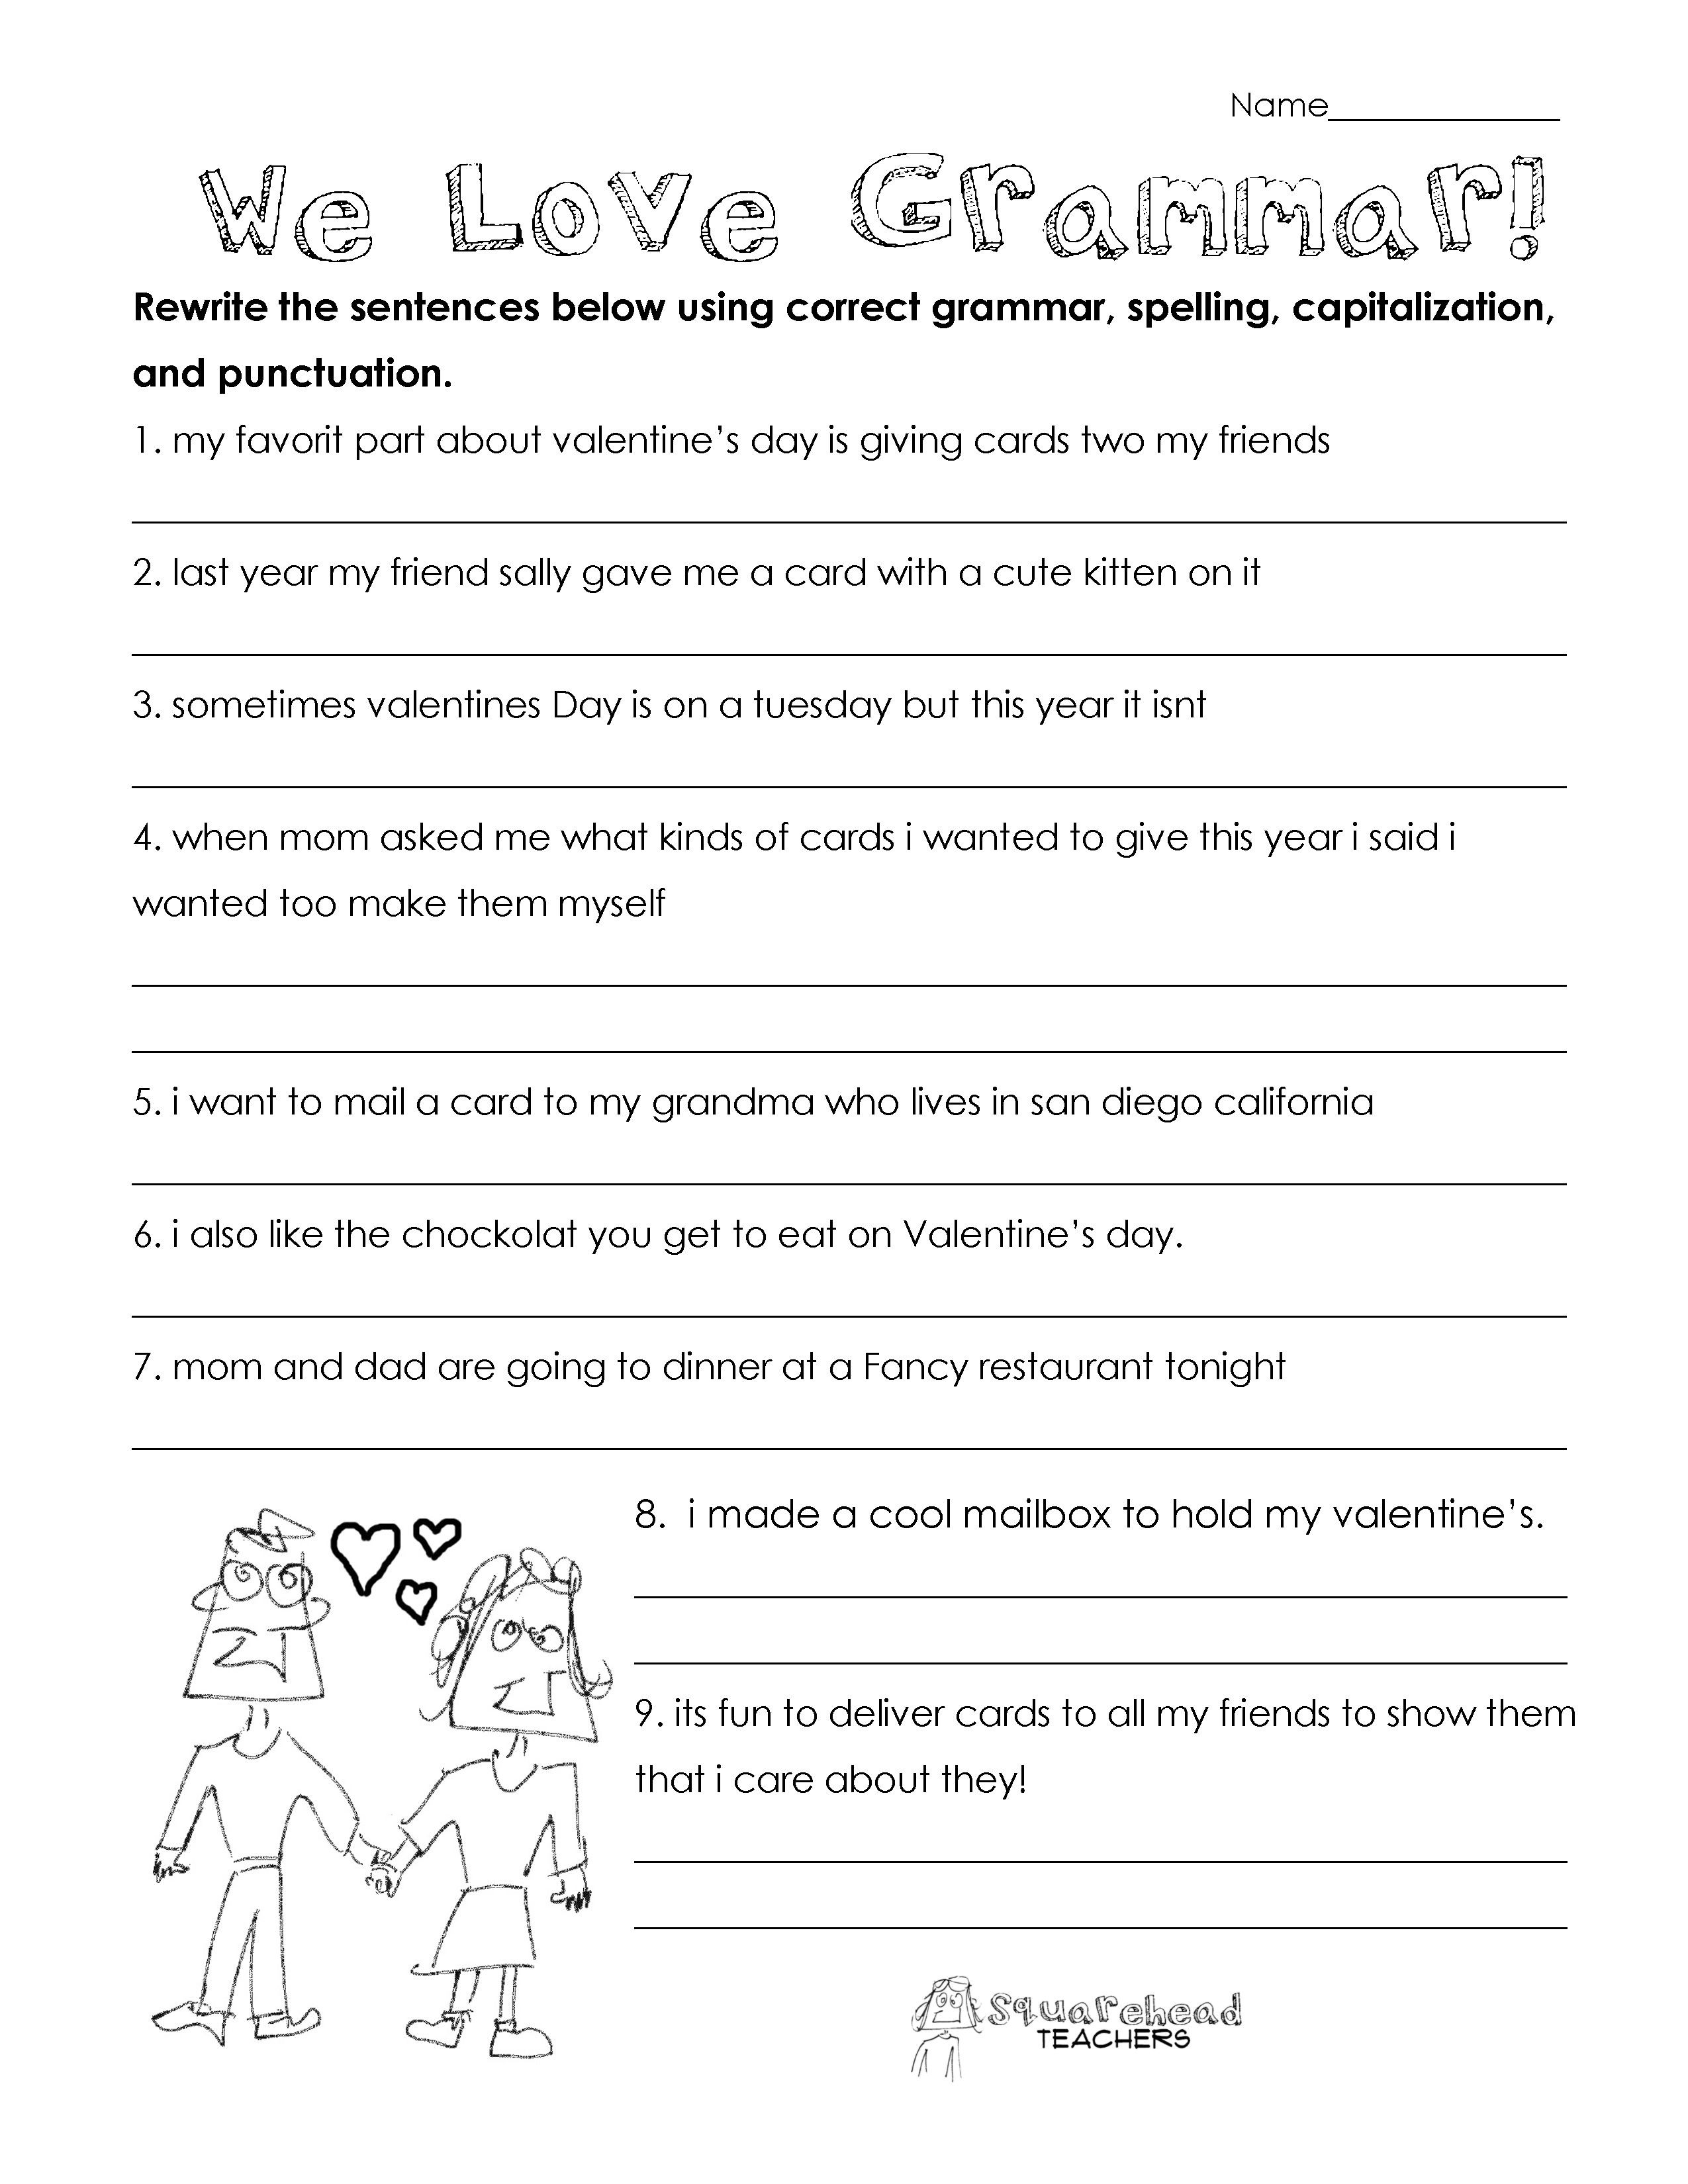 Grammar Worksheets for 3rd Grade Valentine S Day Grammar Free Worksheet for 3rd Grade and Up